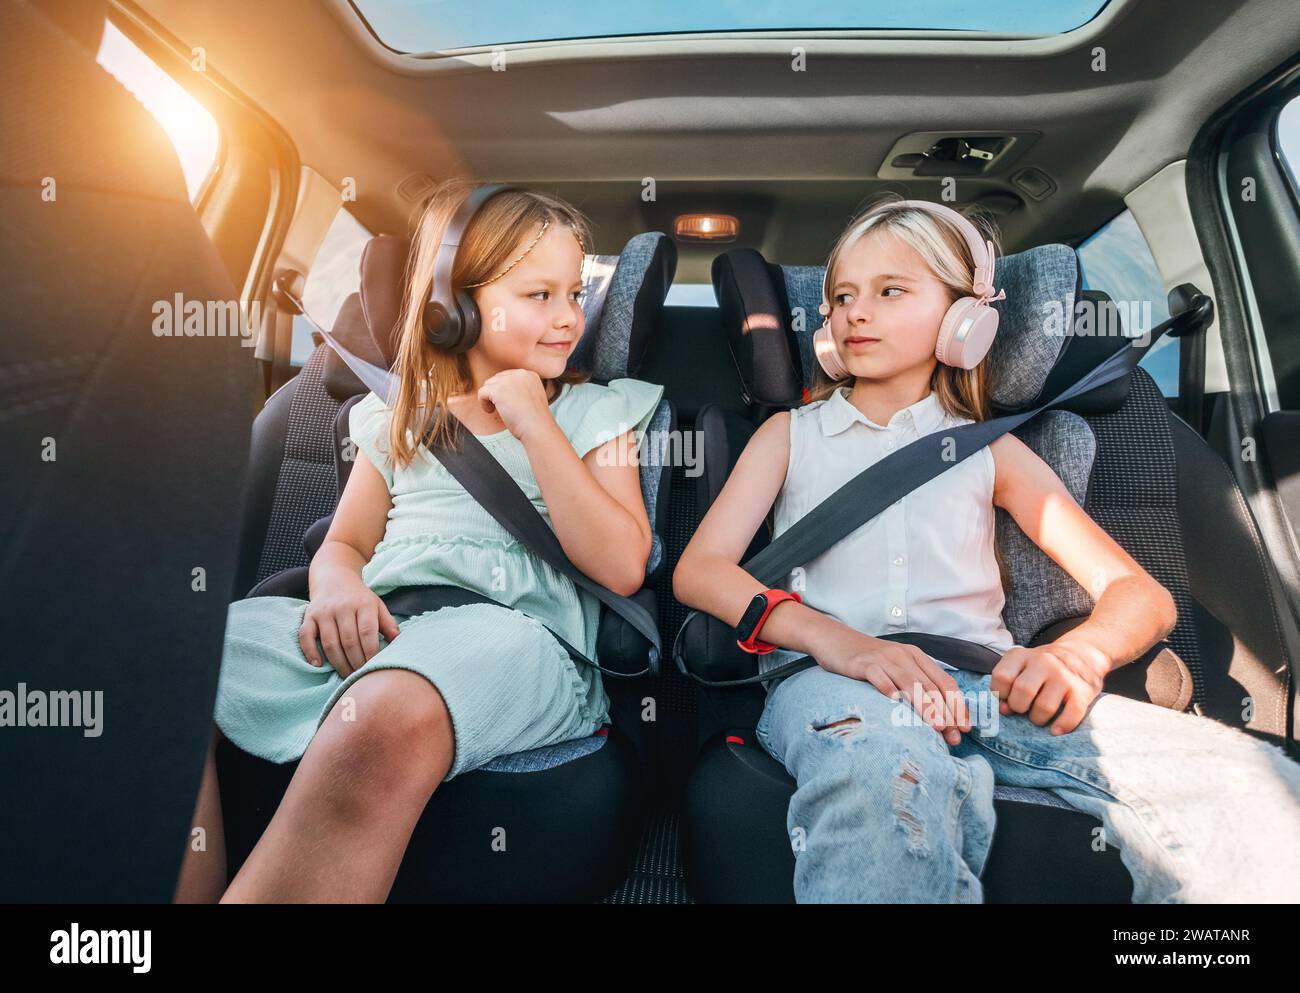 Portrait de deux sœurs souriantes positives assises dans des sièges d'auto pour enfants attachant des ceintures de sécurité en écoutant de la musique à l'aide d'écouteurs. Enfance heureuse, auto Banque D'Images